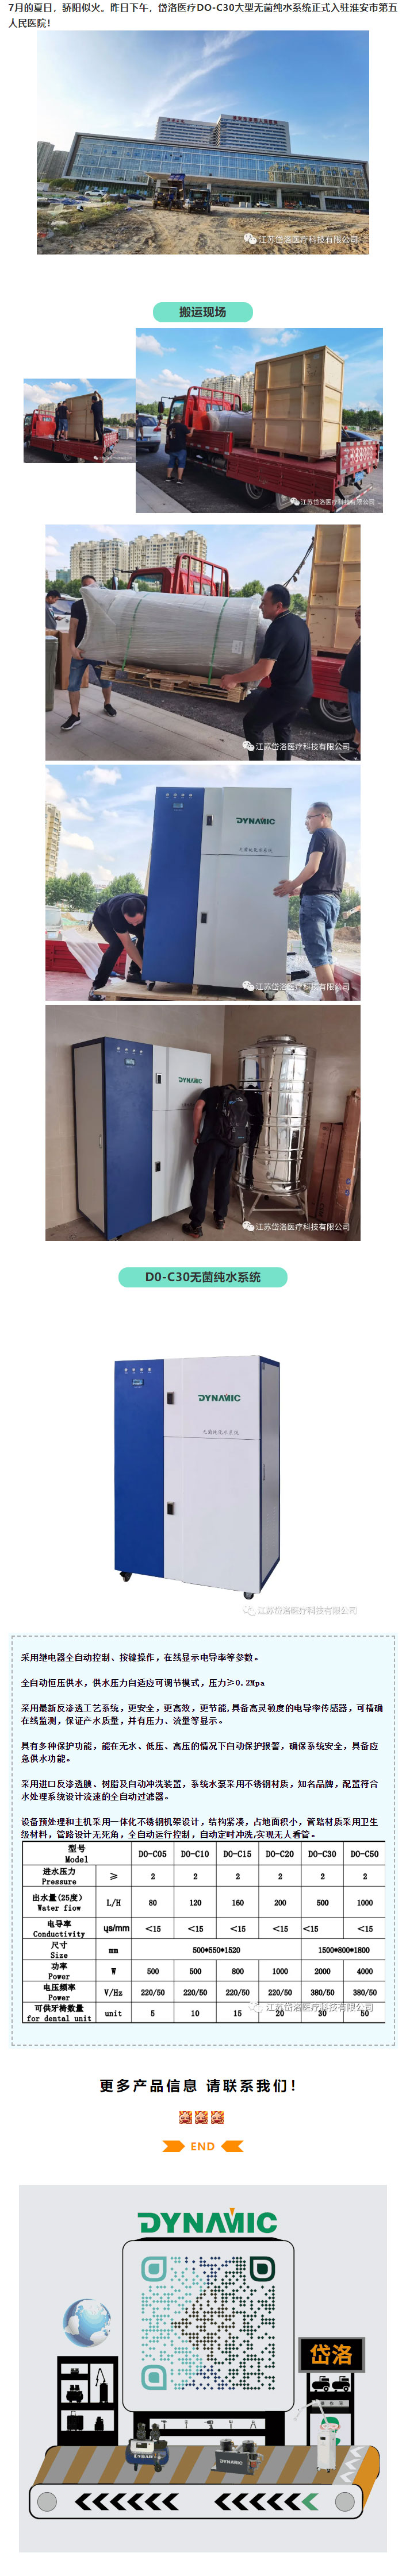 岱洛医疗无菌纯水系统入驻淮安市第五人民医院!